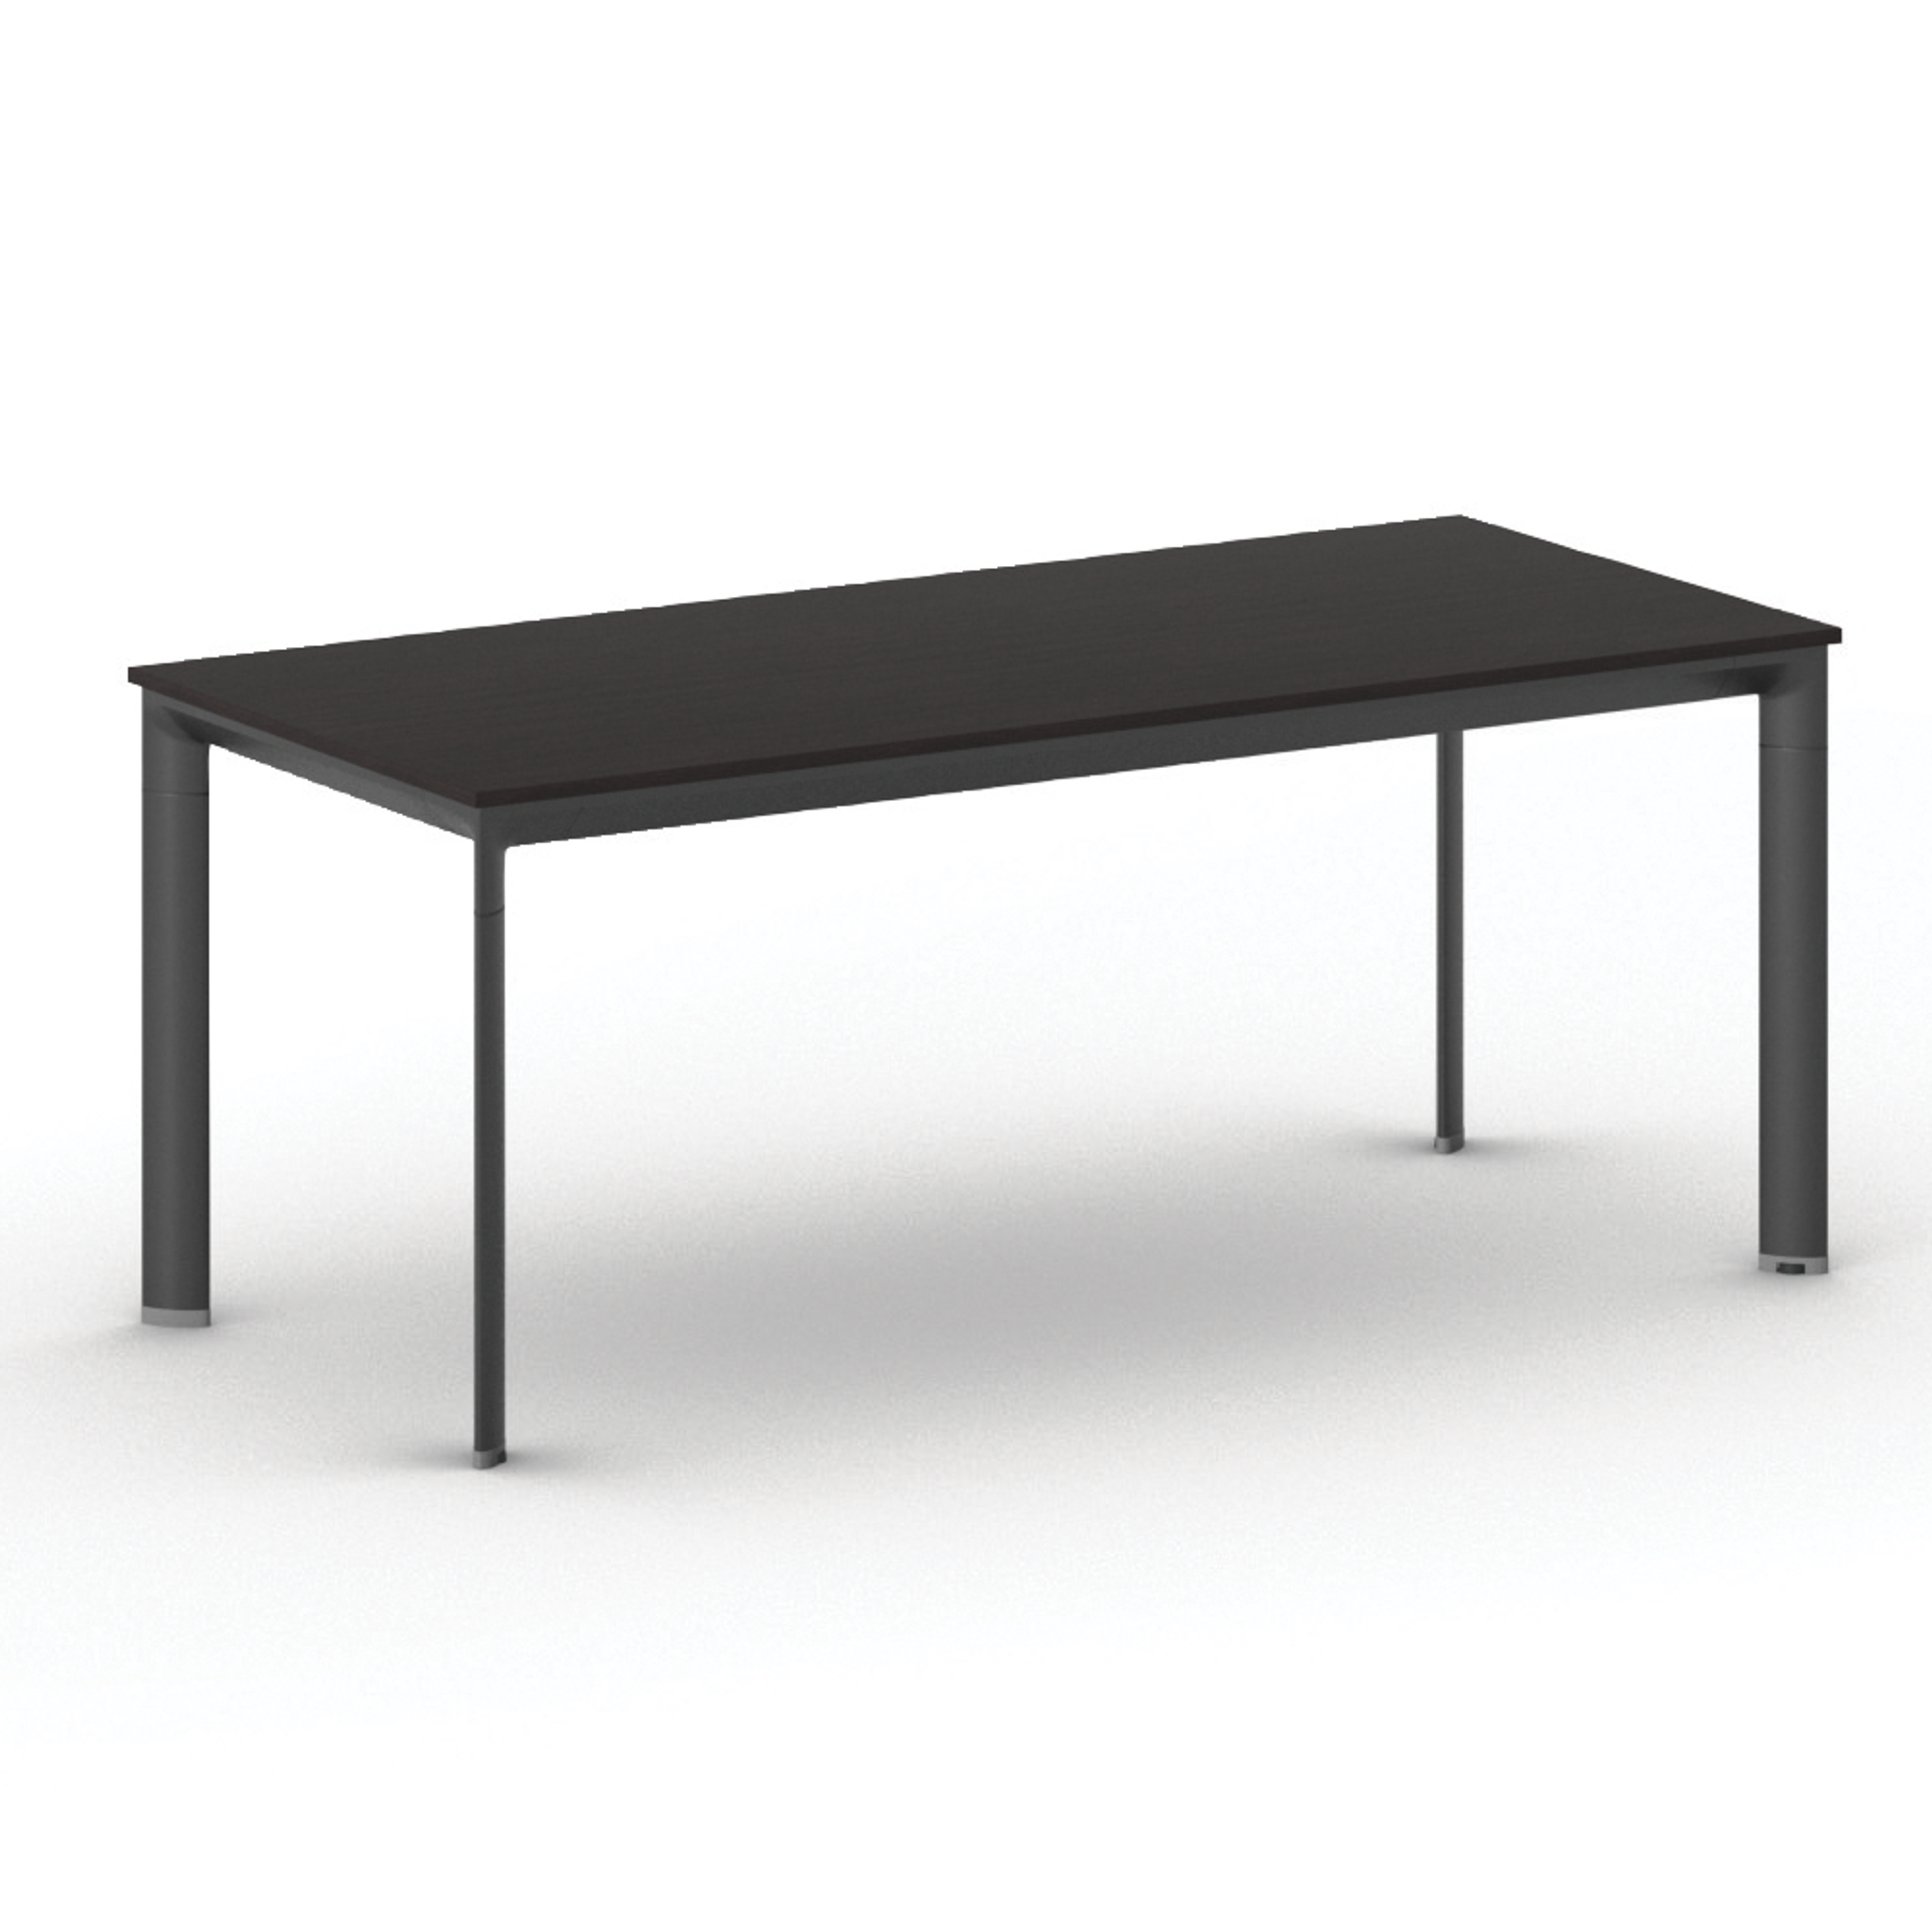 Kancelářský stůl PRIMO INVITATION, černá podnož, 1800 x 800 mm, wenge